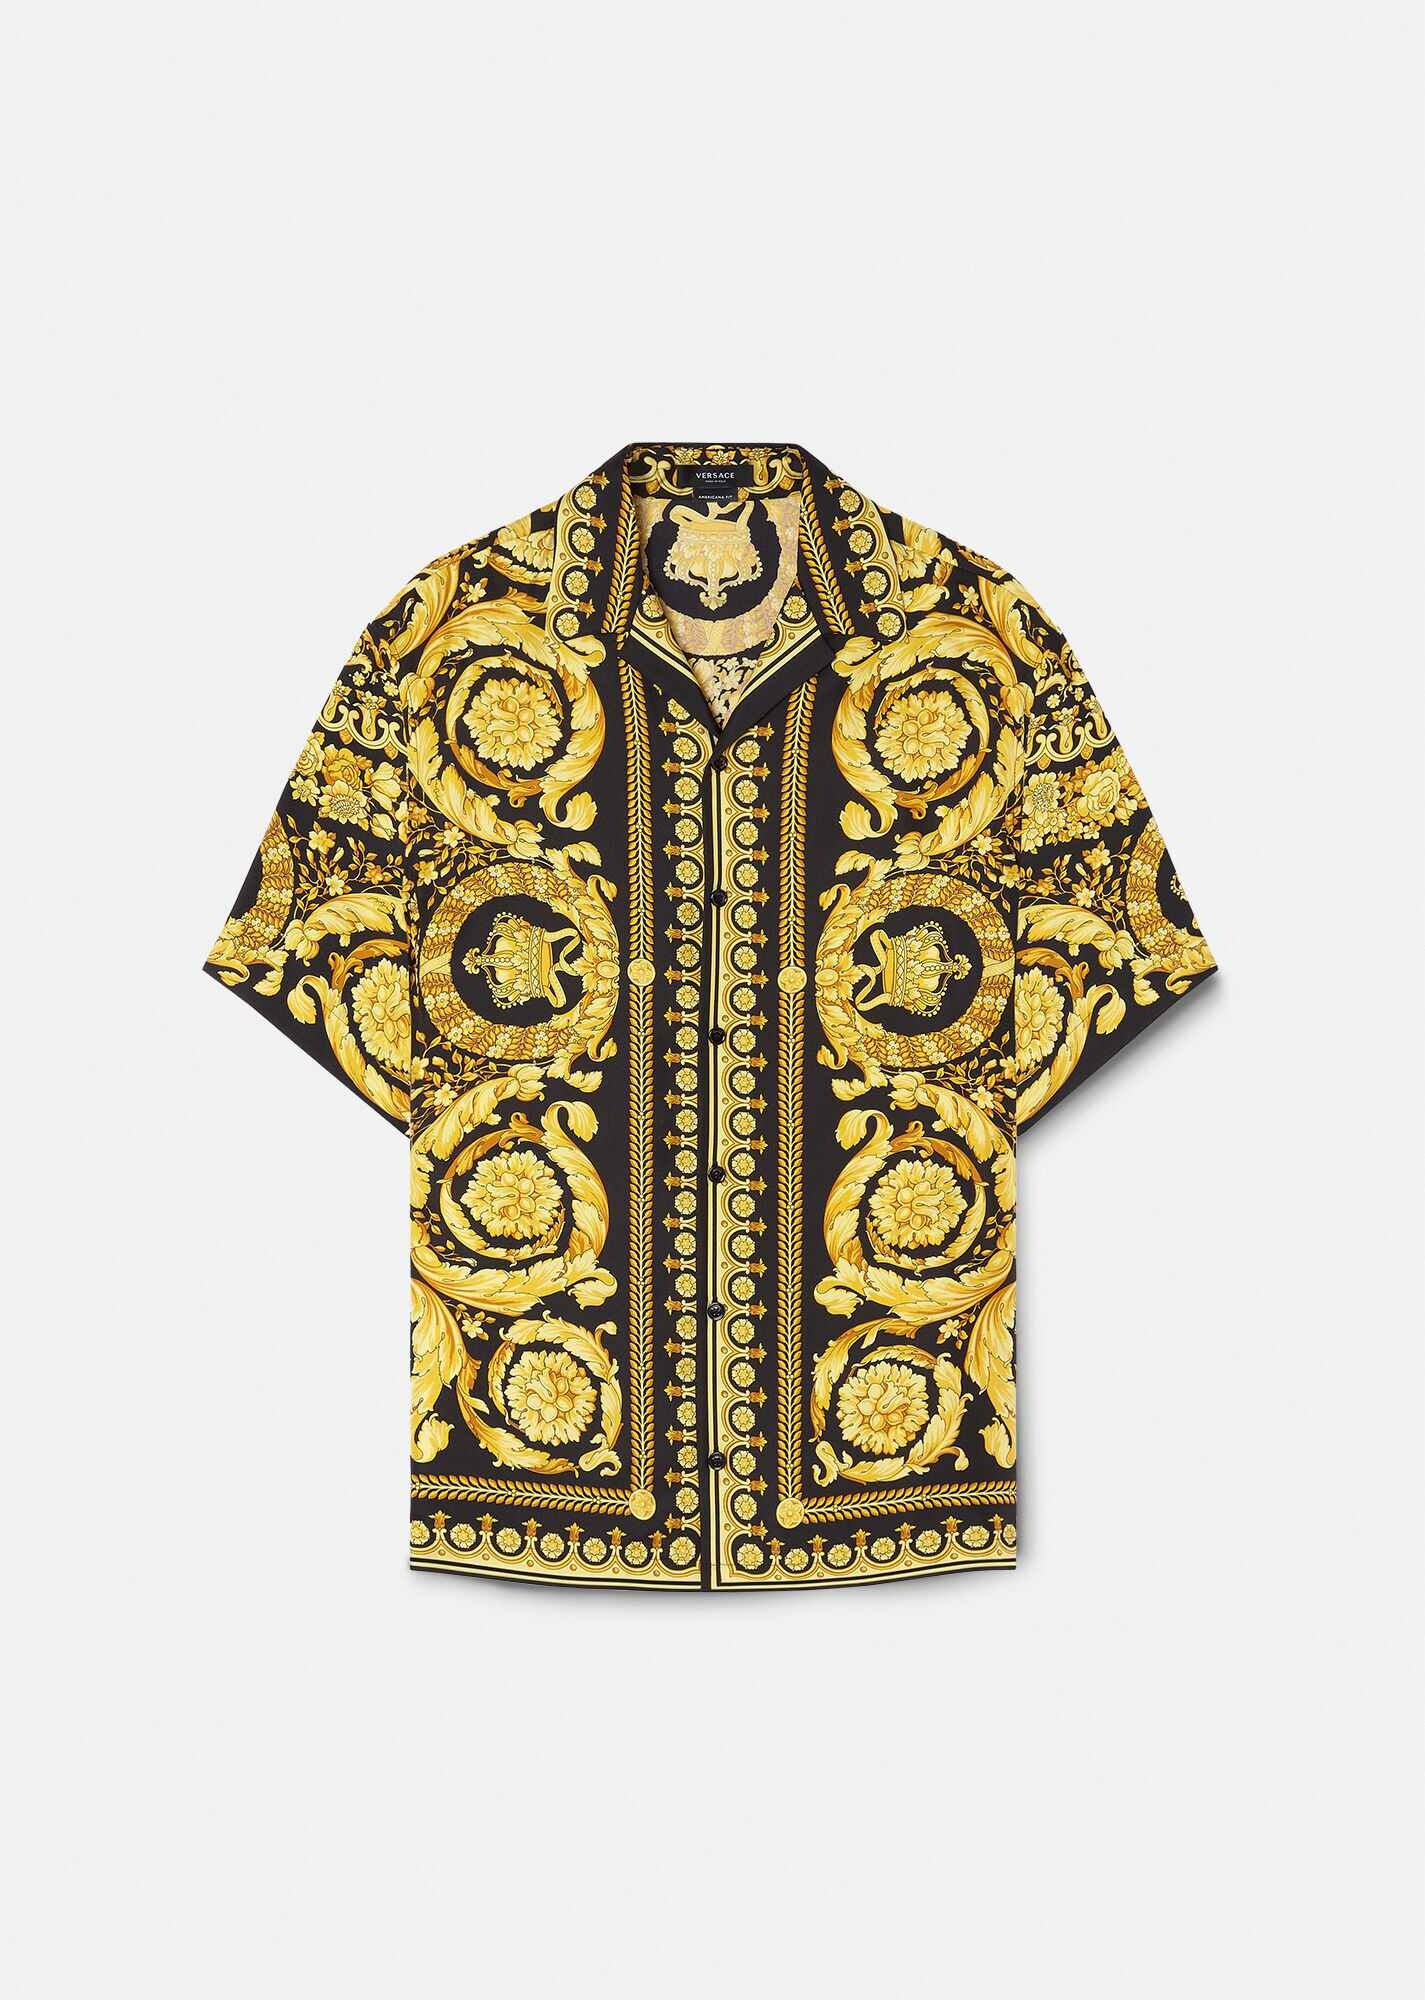 Barocco Silk Shirt - 1